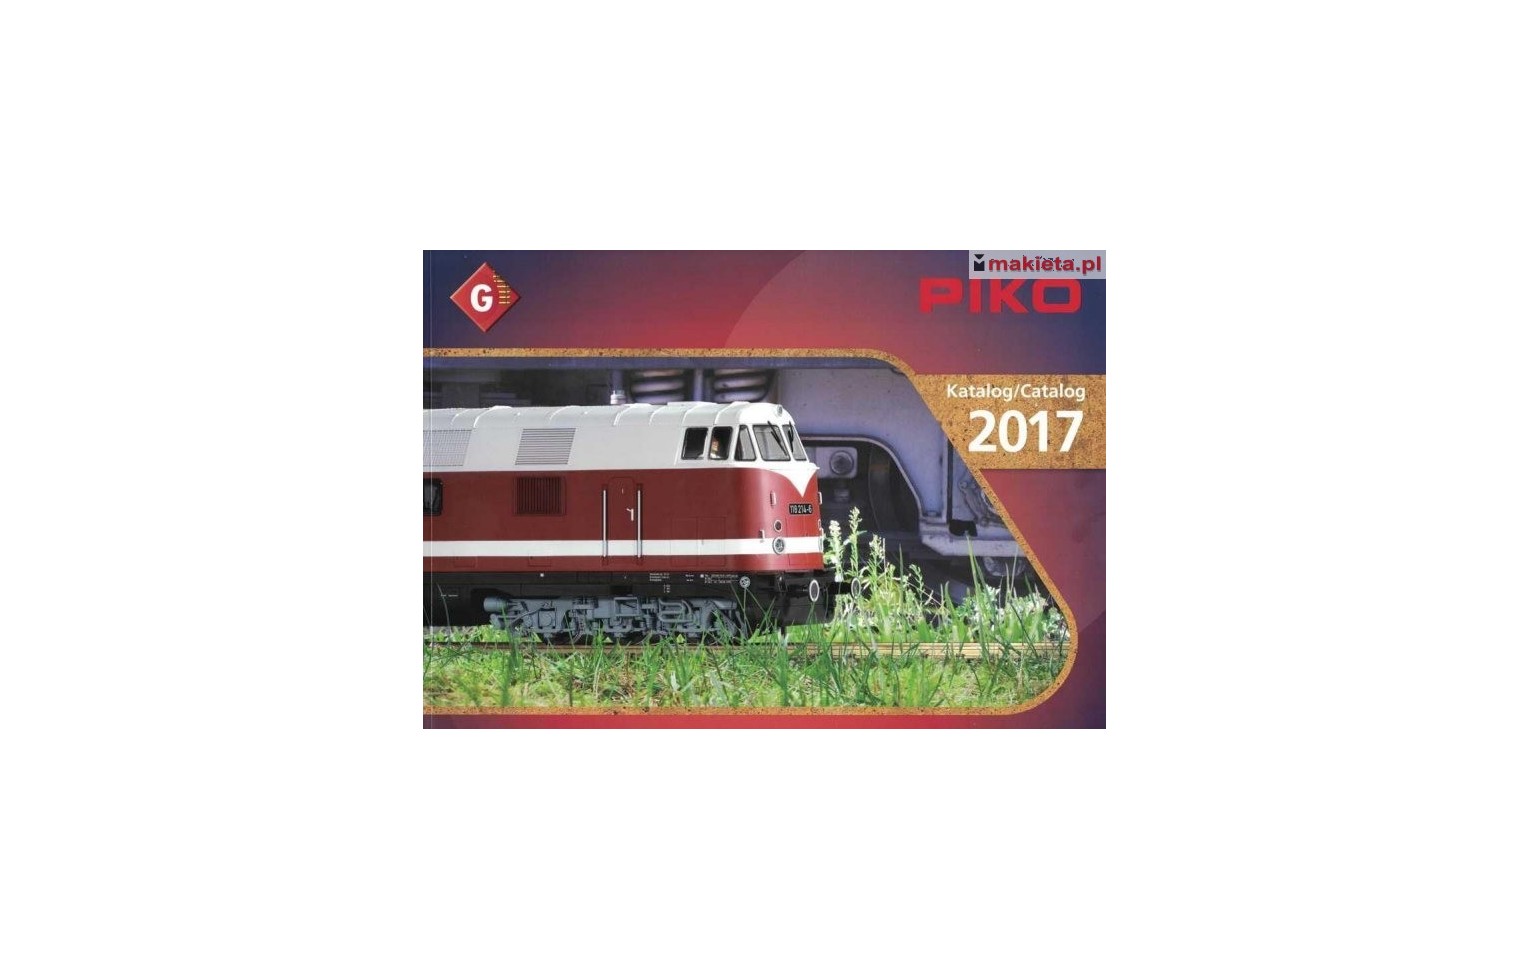 PIKO 99707, katalog skali G - 2017